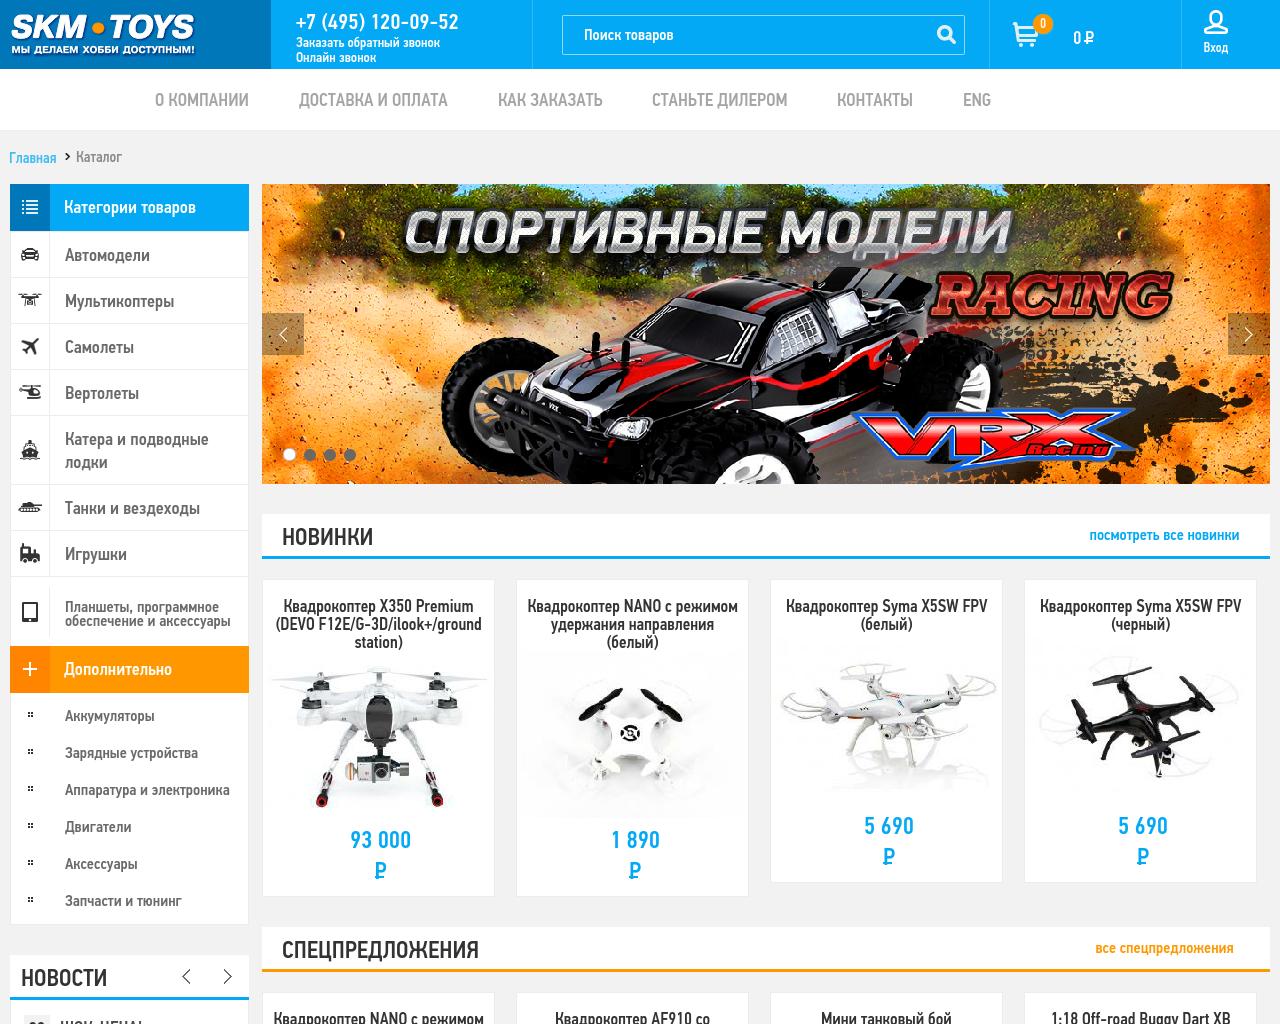 Изображение сайта skm-toys.ru в разрешении 1280x1024